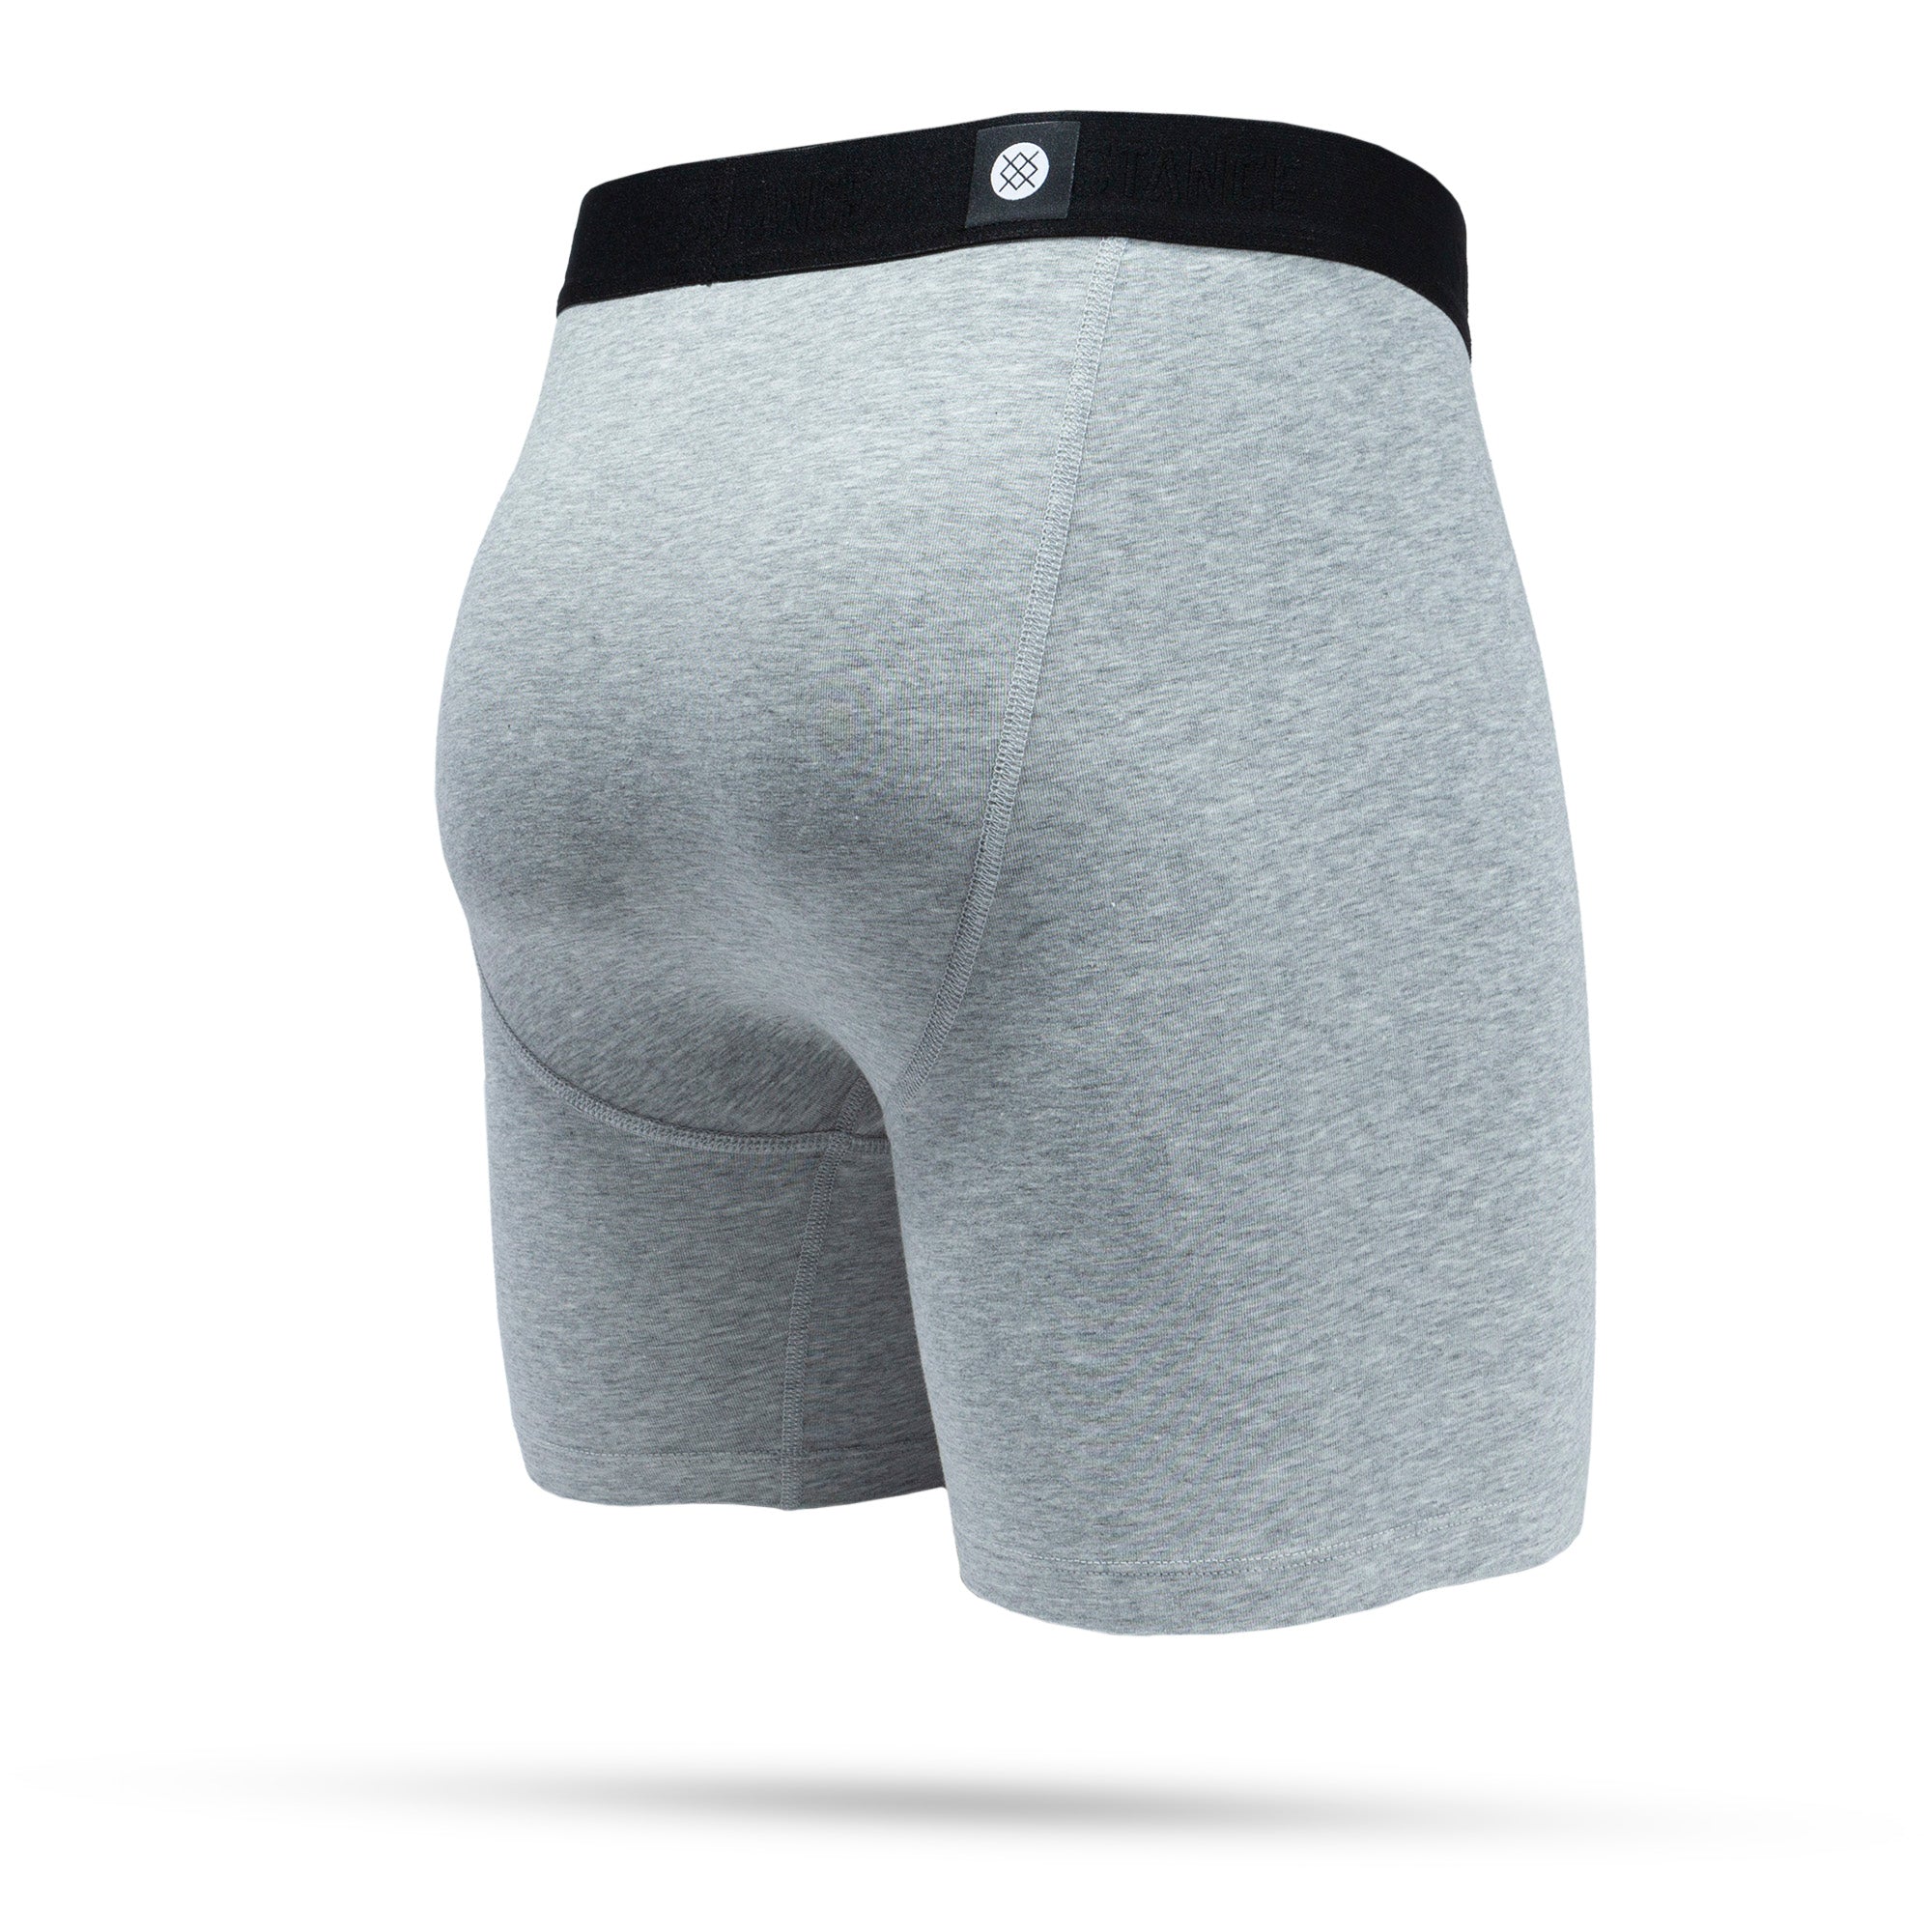 Stance Underwear: Crosshatch Wholester - Black